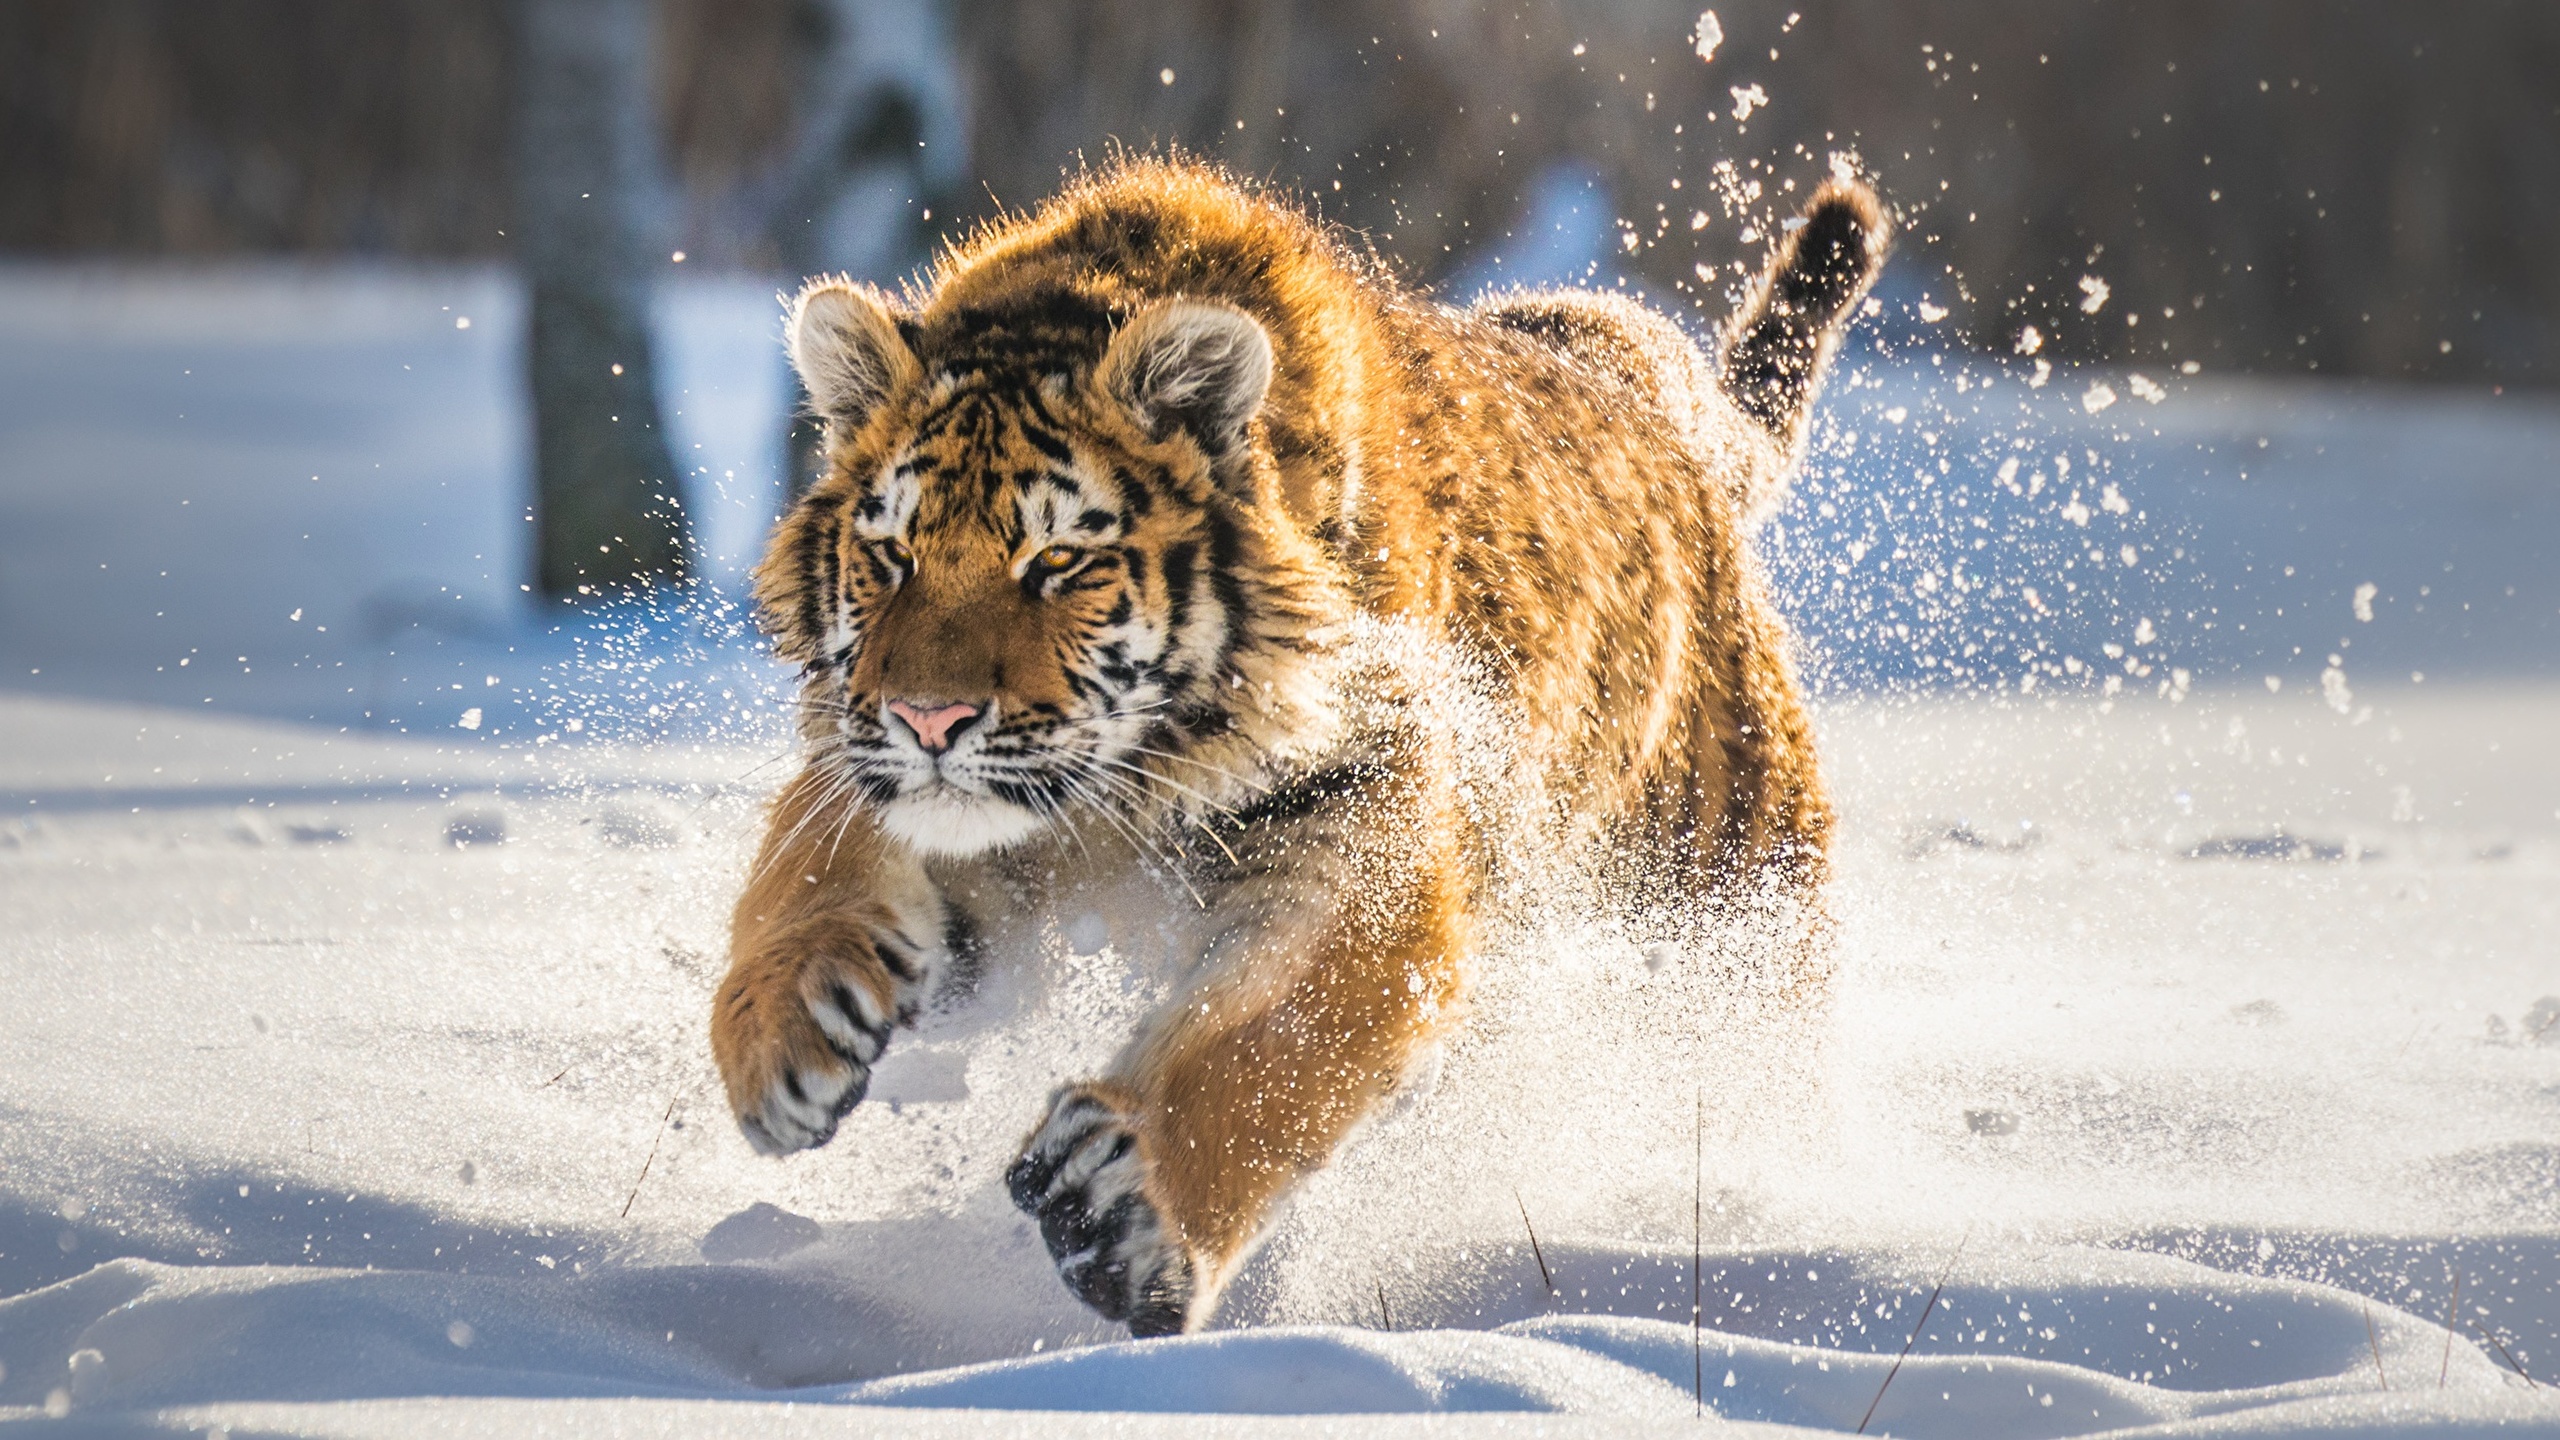 壁紙 2560x1440 トラ 若い動物 雪 ランニング 動物 ダウンロード 写真